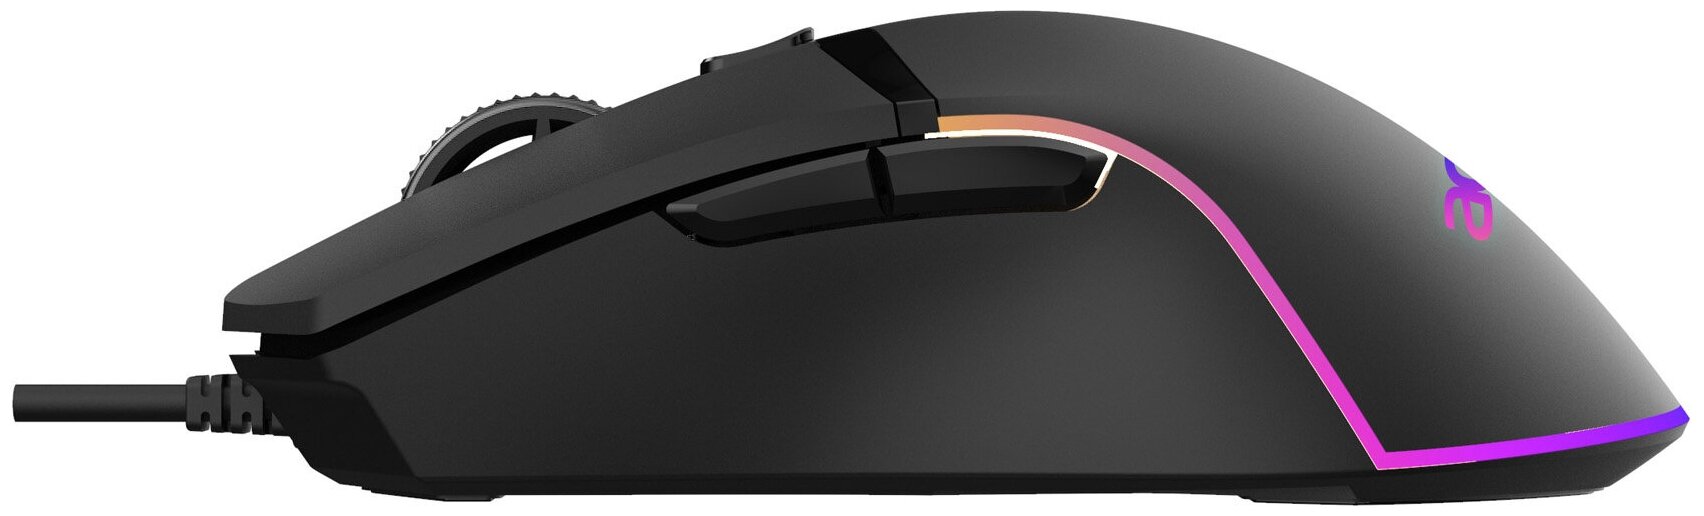 Мышь Acer OMW121 черный оптическая (6400dpi) USB (6but)